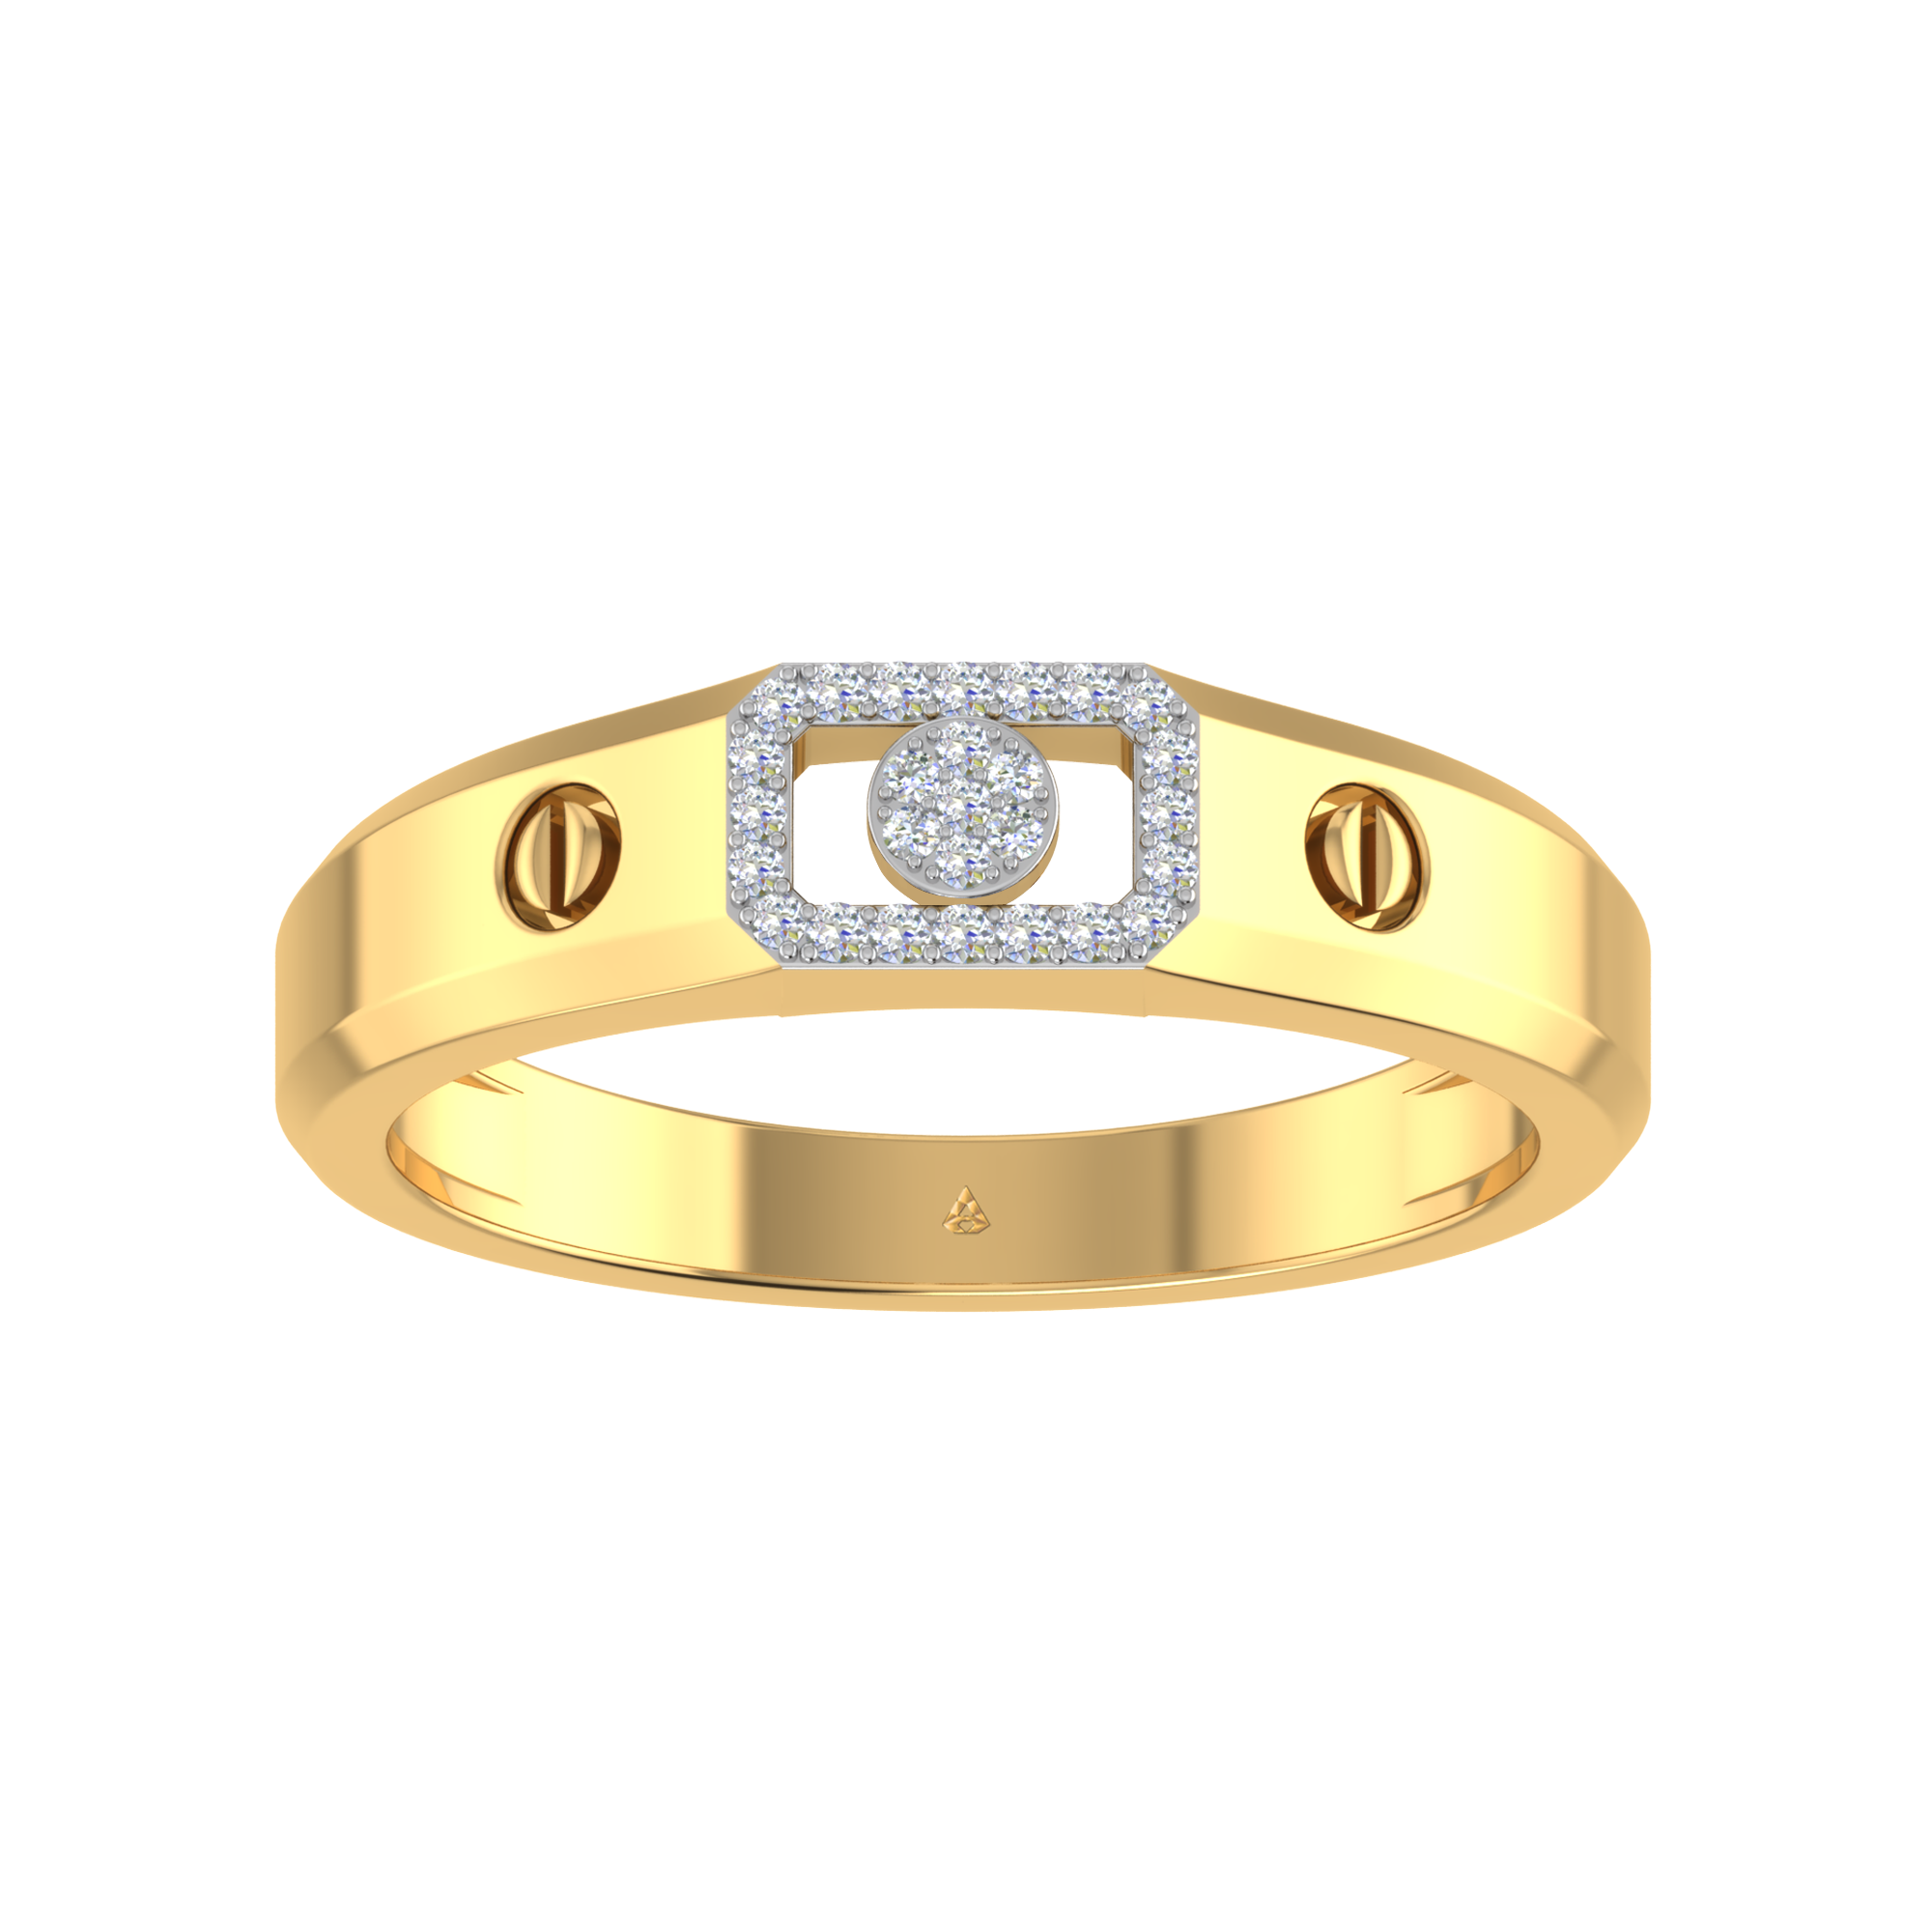 Buy Tension Set Ring, 14k / 18k Yellow Gold Diamond Ring, Unisex Diamond  Ring, Single Diamond Wedding Band, Mens Ring, Diagonal Diamond Ring Online  in India - Etsy